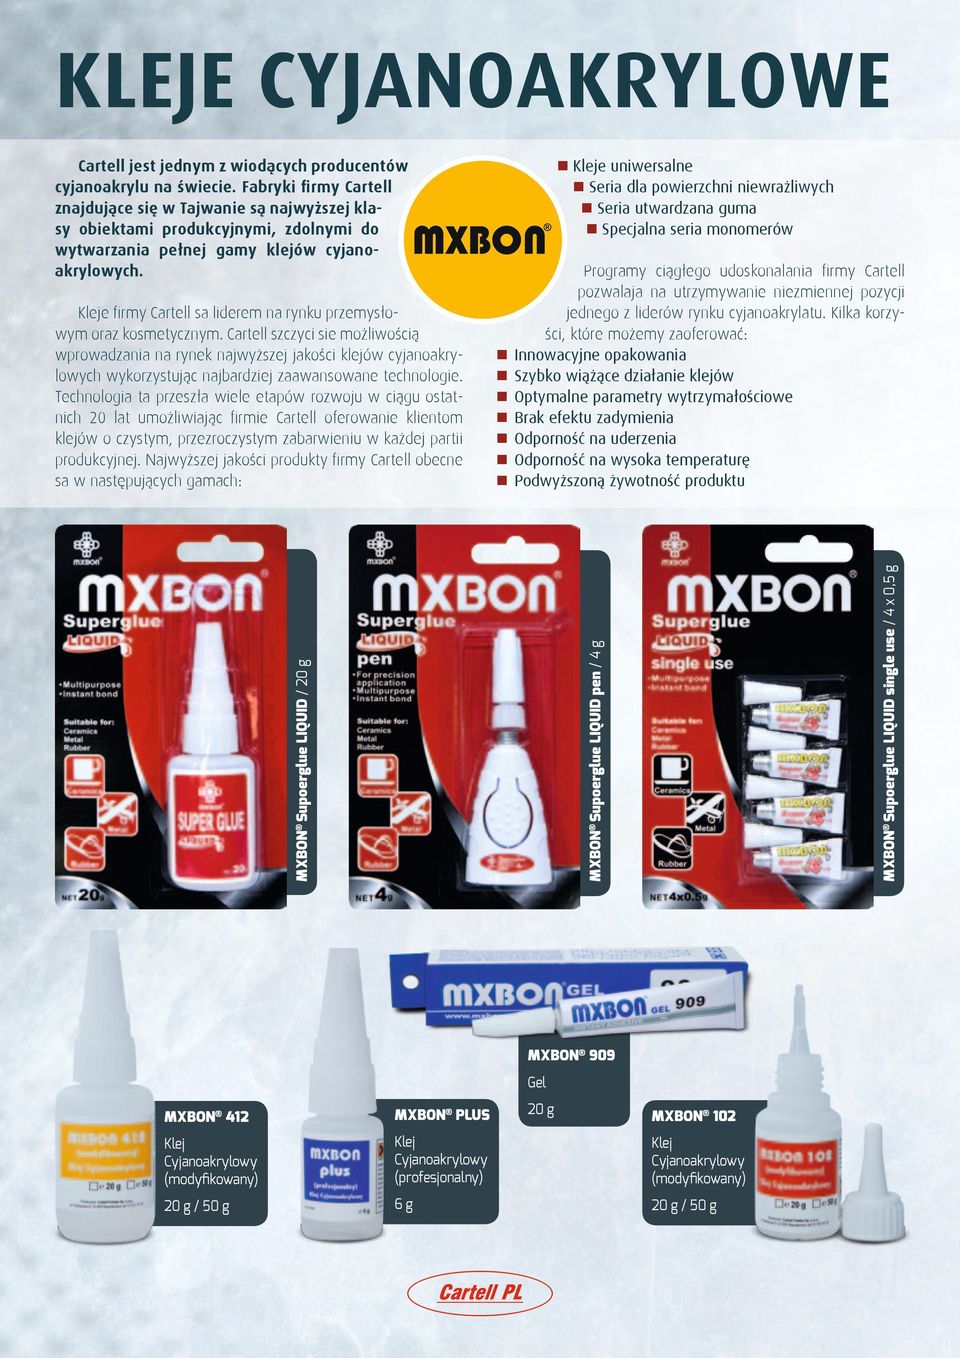 Odporność na wysoka temperaturę n Podwyższoną żywotność produktu MXBON Supoerglue LIQUID / 20 g MXBON Supoerglue LIQUID pen / g Kleje firmy Cartell sa liderem na rynku przemysłowym oraz kosmetycznym.